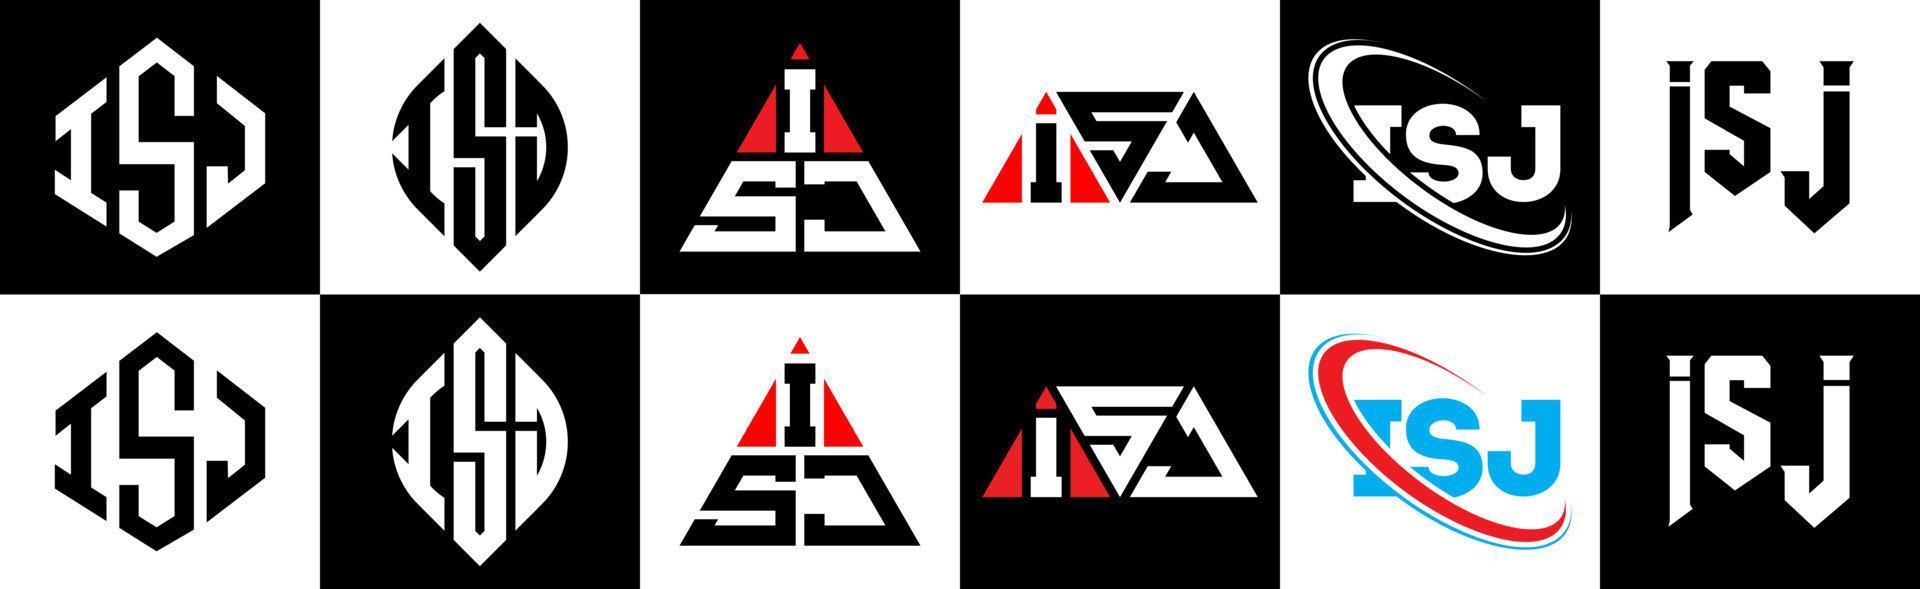 création de logo de lettre isj en six styles. polygone isj, cercle, triangle, hexagone, style plat et simple avec logo de lettre de variation de couleur noir et blanc dans un plan de travail. isj logo minimaliste et classique vecteur